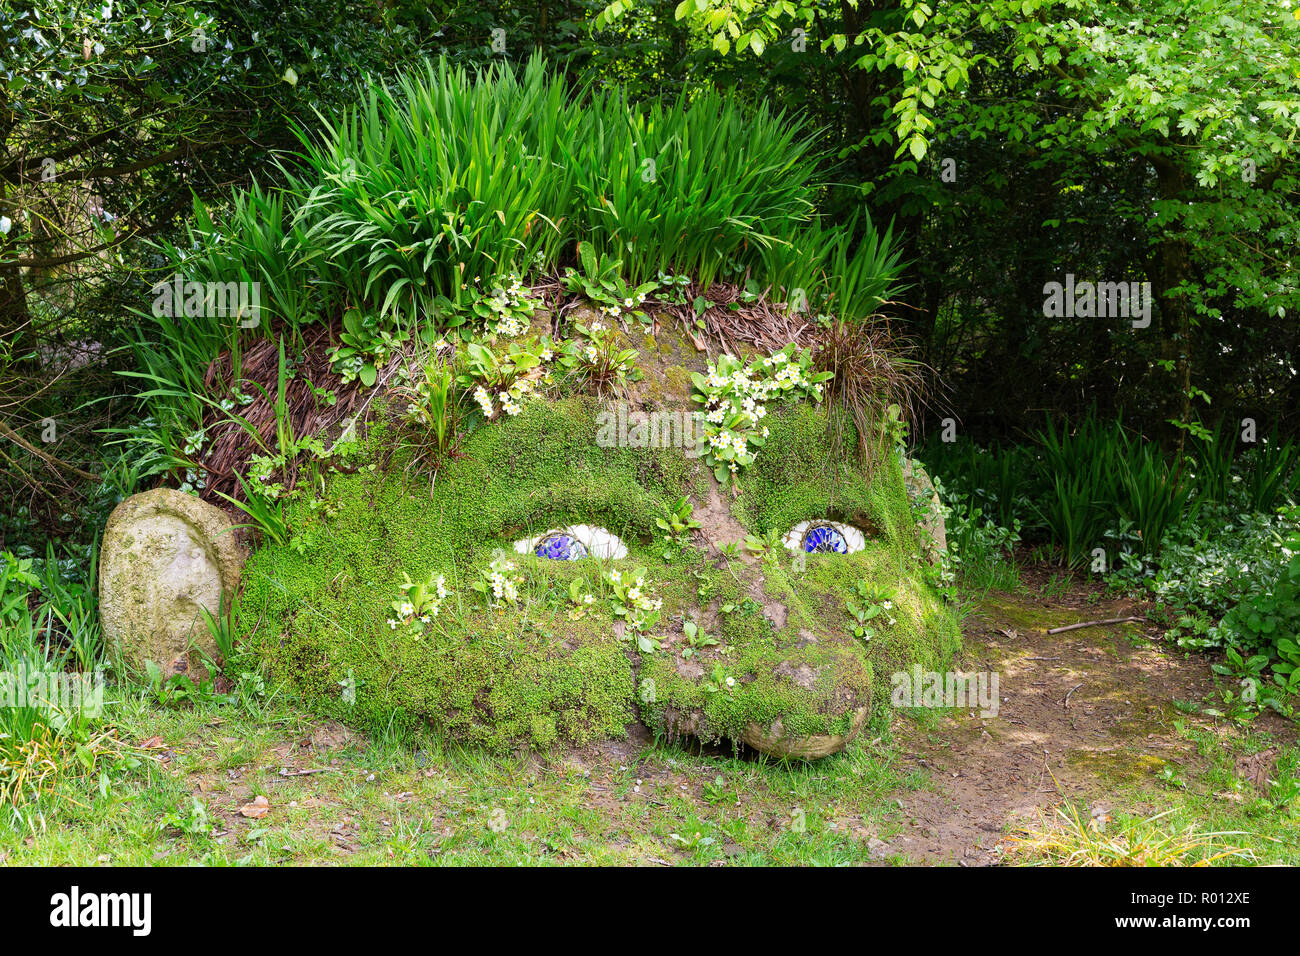 Der riesige Kopf Pflanzen und Felsen Bildhauerei an der Verlorenen Gärten  von Heligan, Cornwall, England Stockfotografie - Alamy